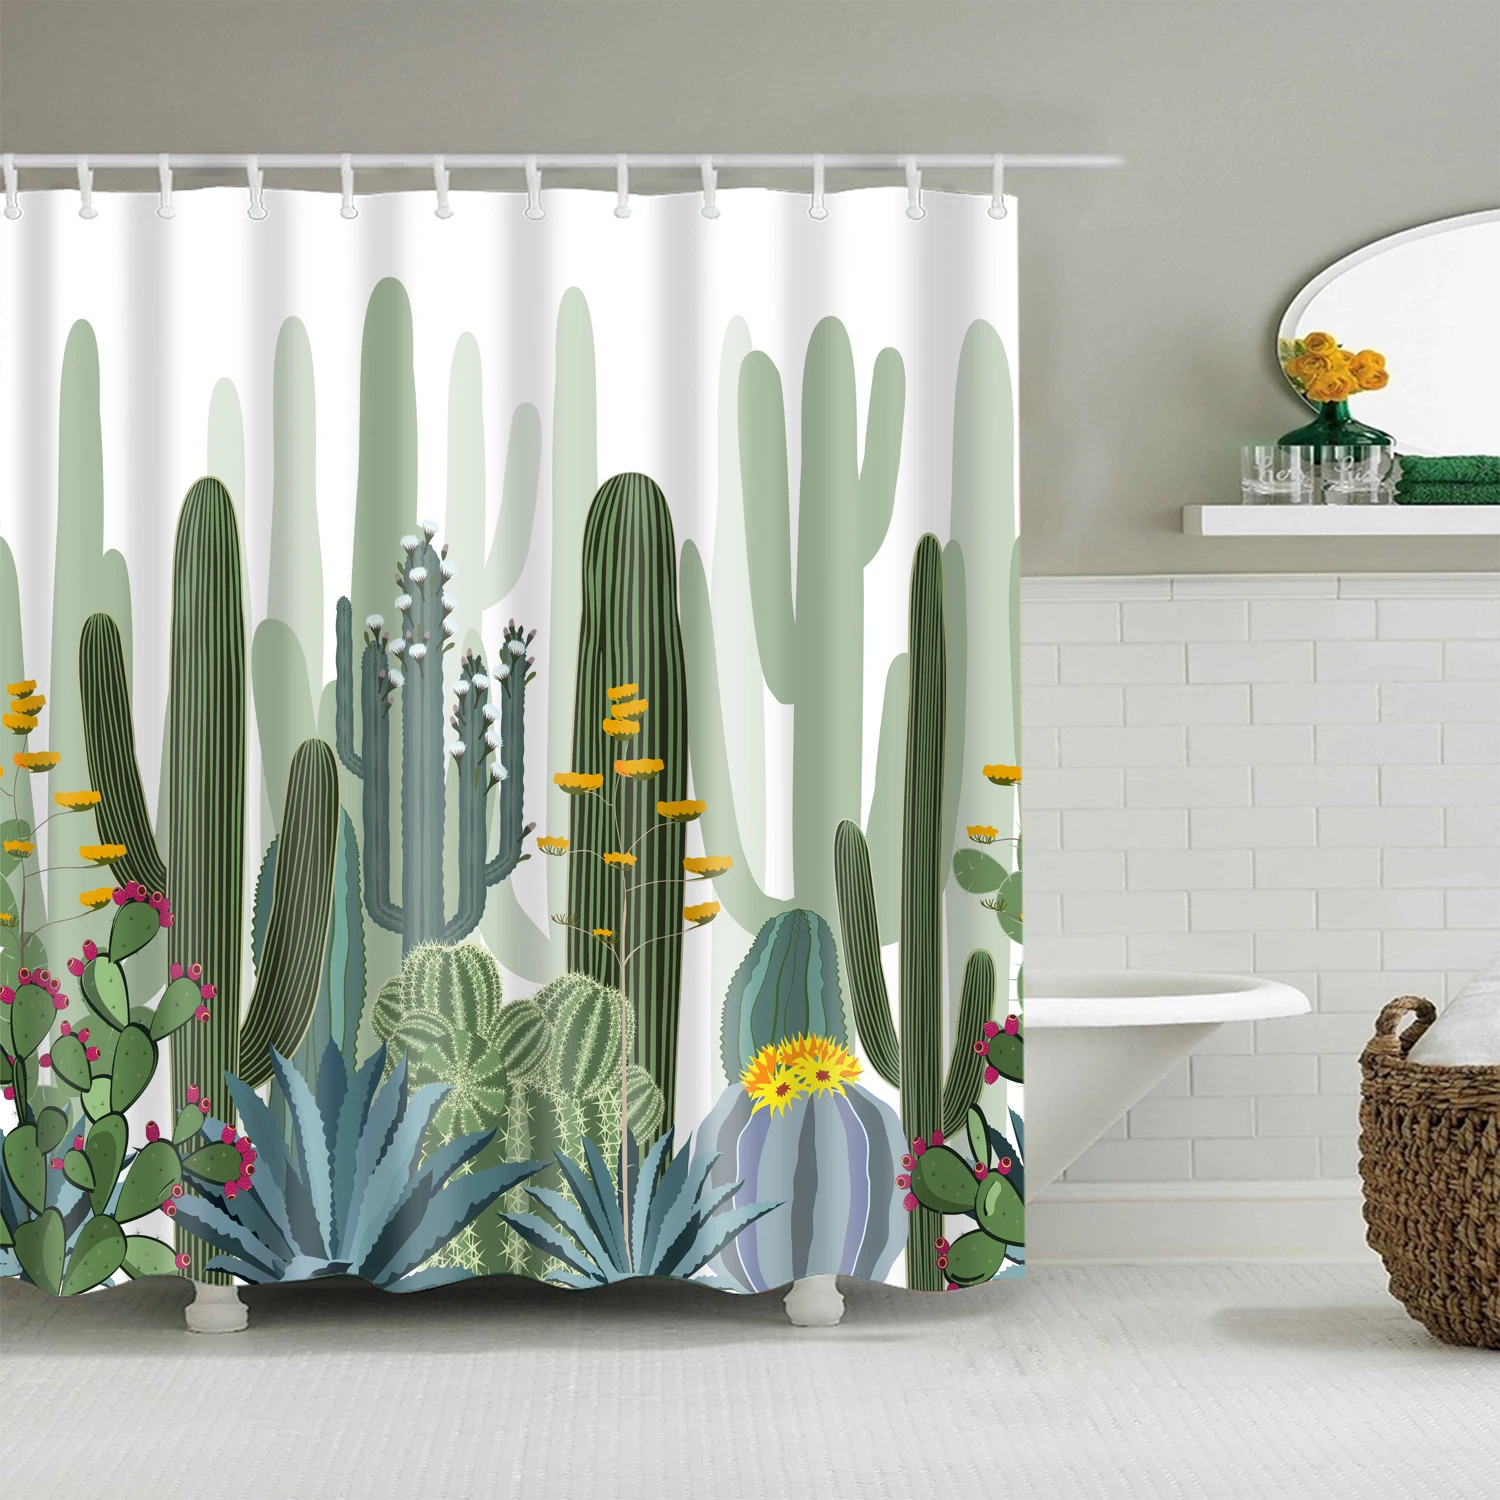 

Занавеска для душа с тропическими зелеными листьями, водонепроницаемая Шторка для ванной из полиэстера, с объемными цветами, растениями, пальмами, кактусами, декоративный экран для дома